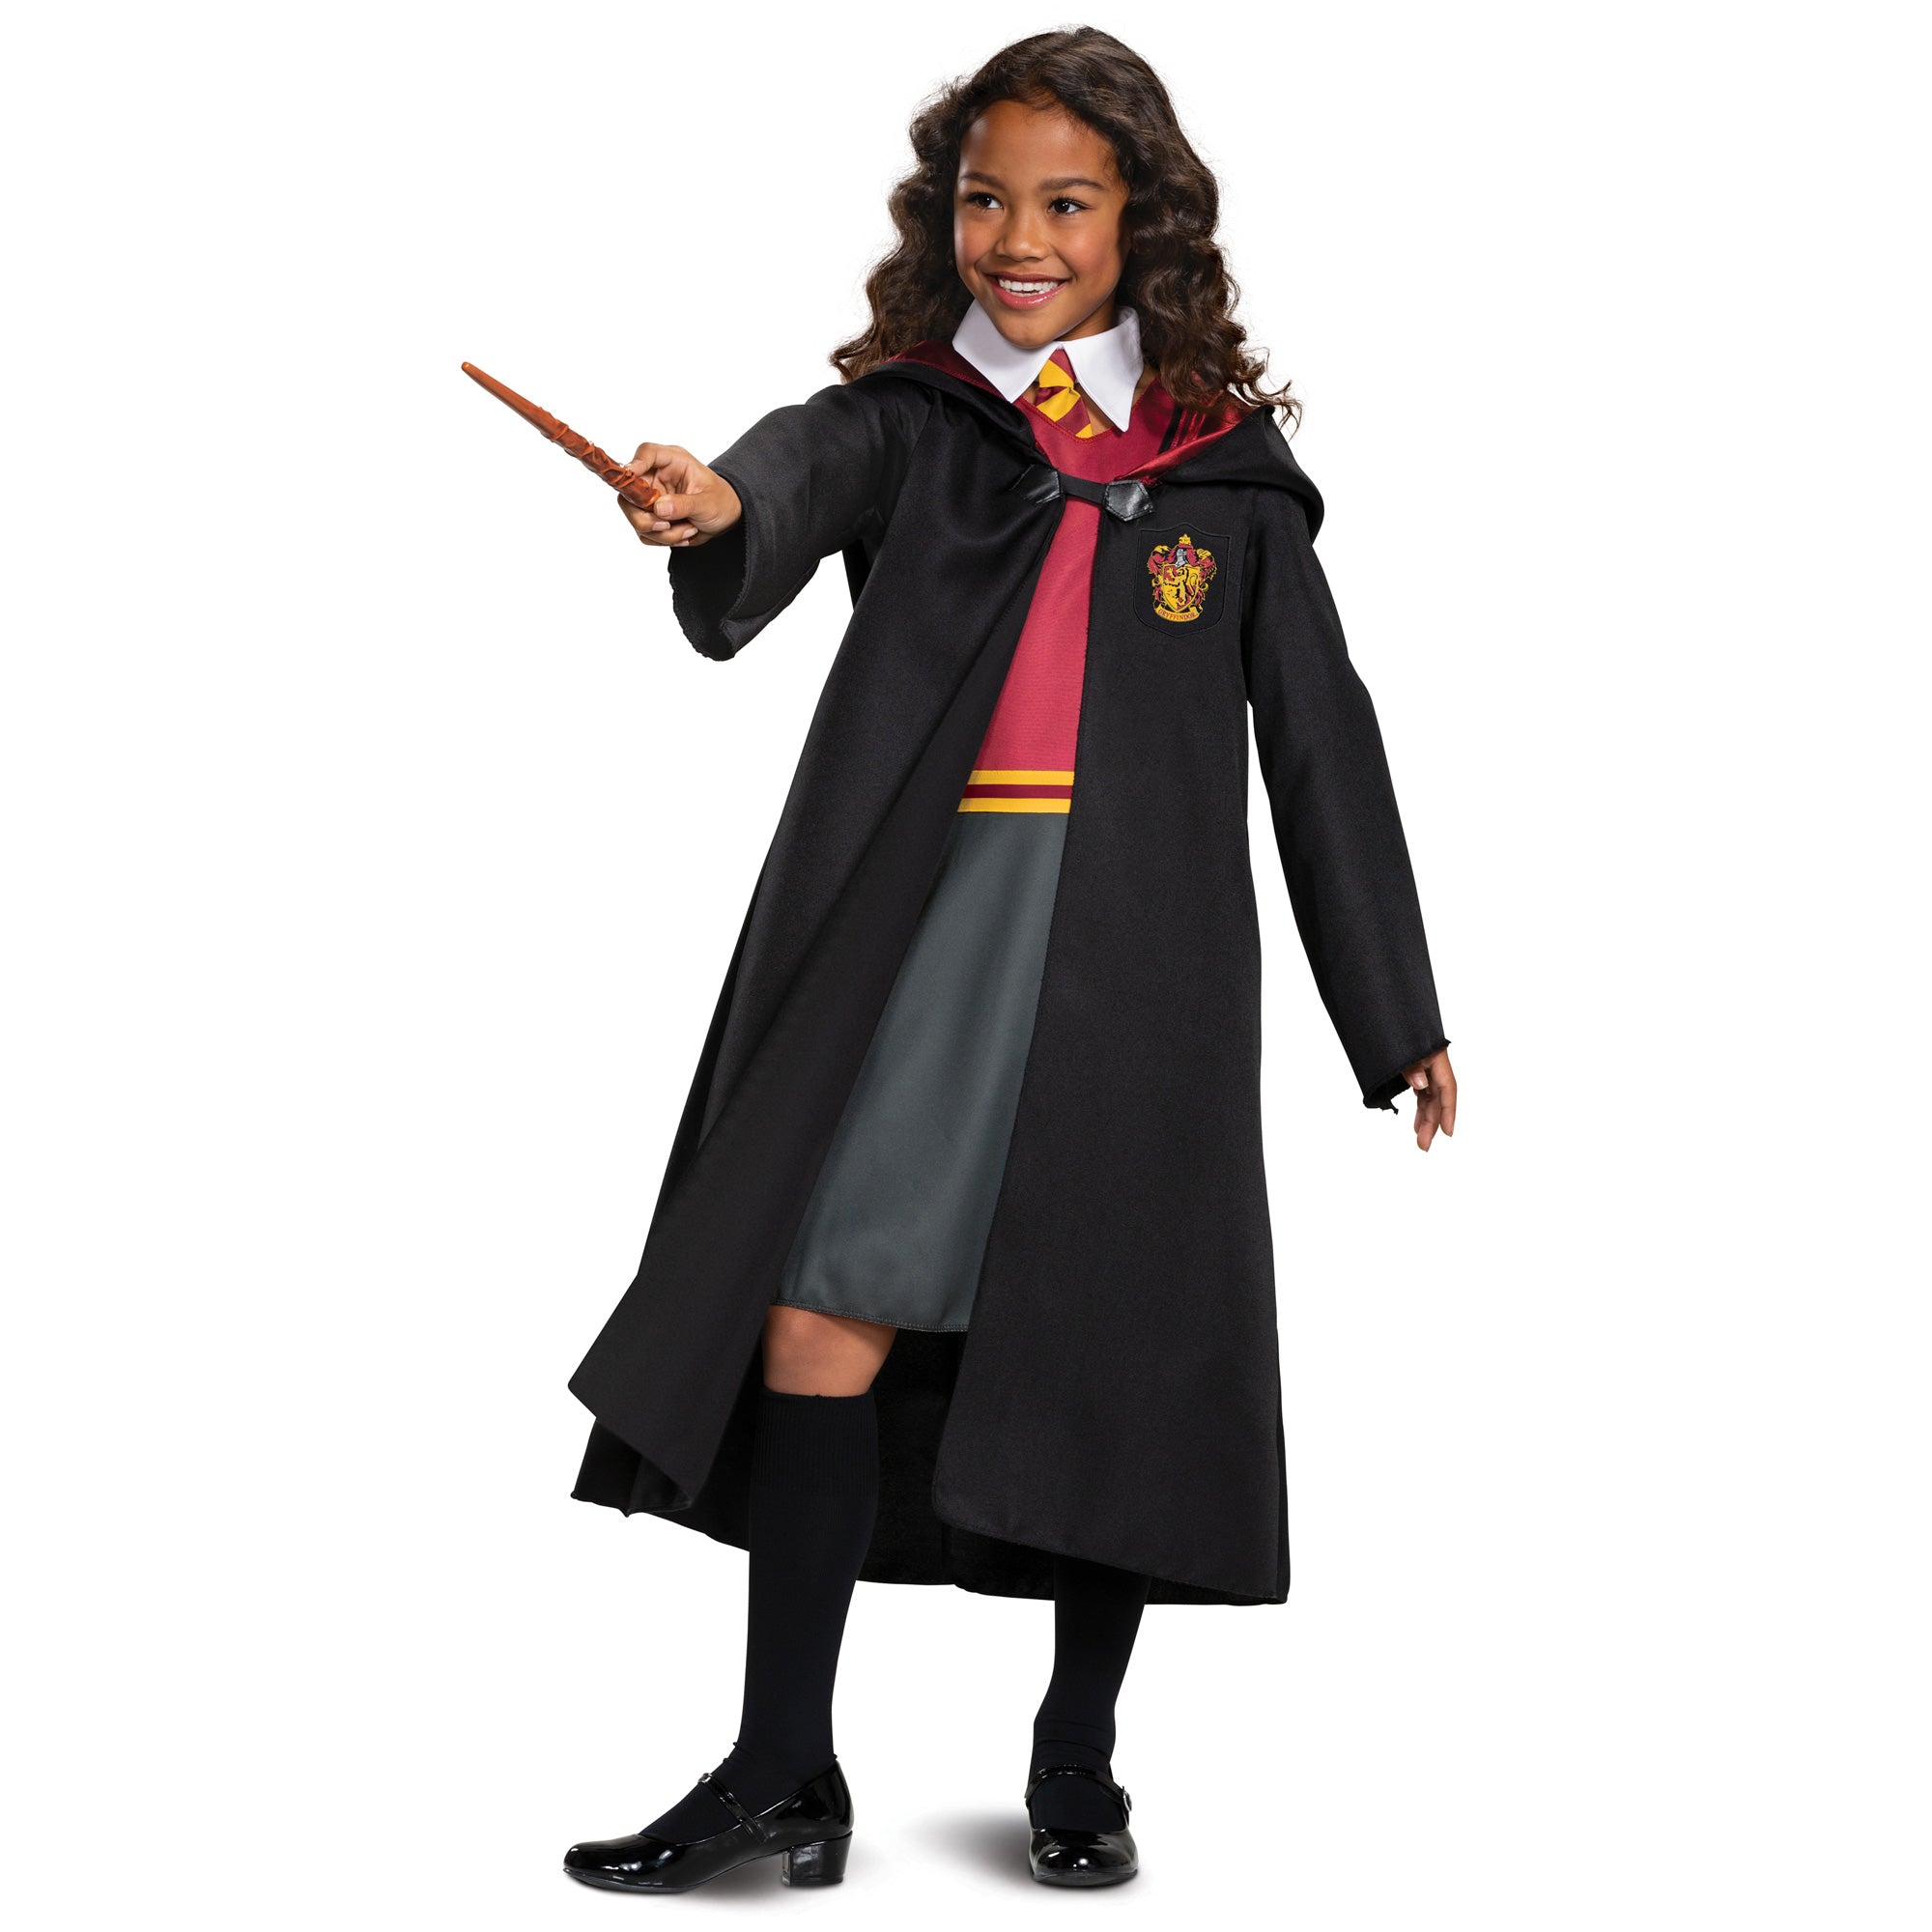 Robe de Gryffondor de Harry Potter pour enfants, Robe rouge et grise et col  avec cravate